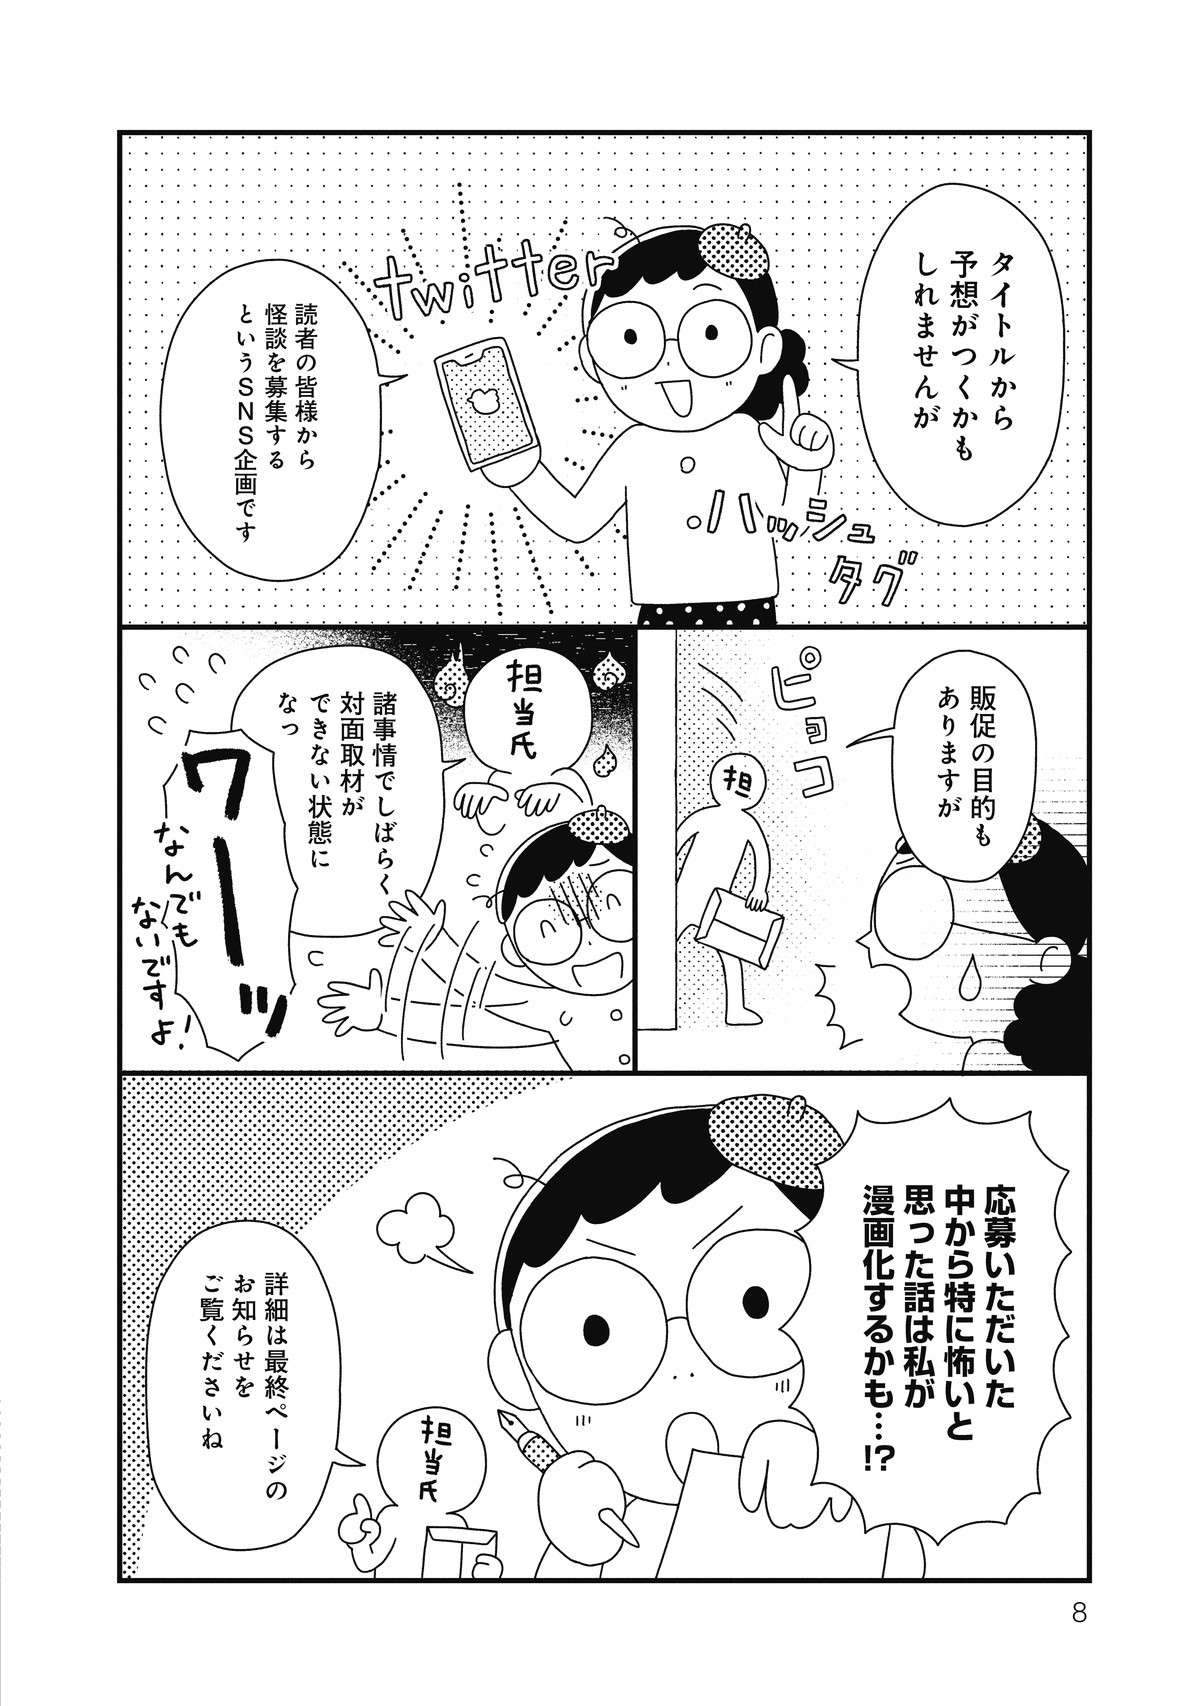 「山童」って知っていますか？ 九州地方や西日本の伝承で、それを友人に話したら...／コワい話は≠くだけで。 5.jpg